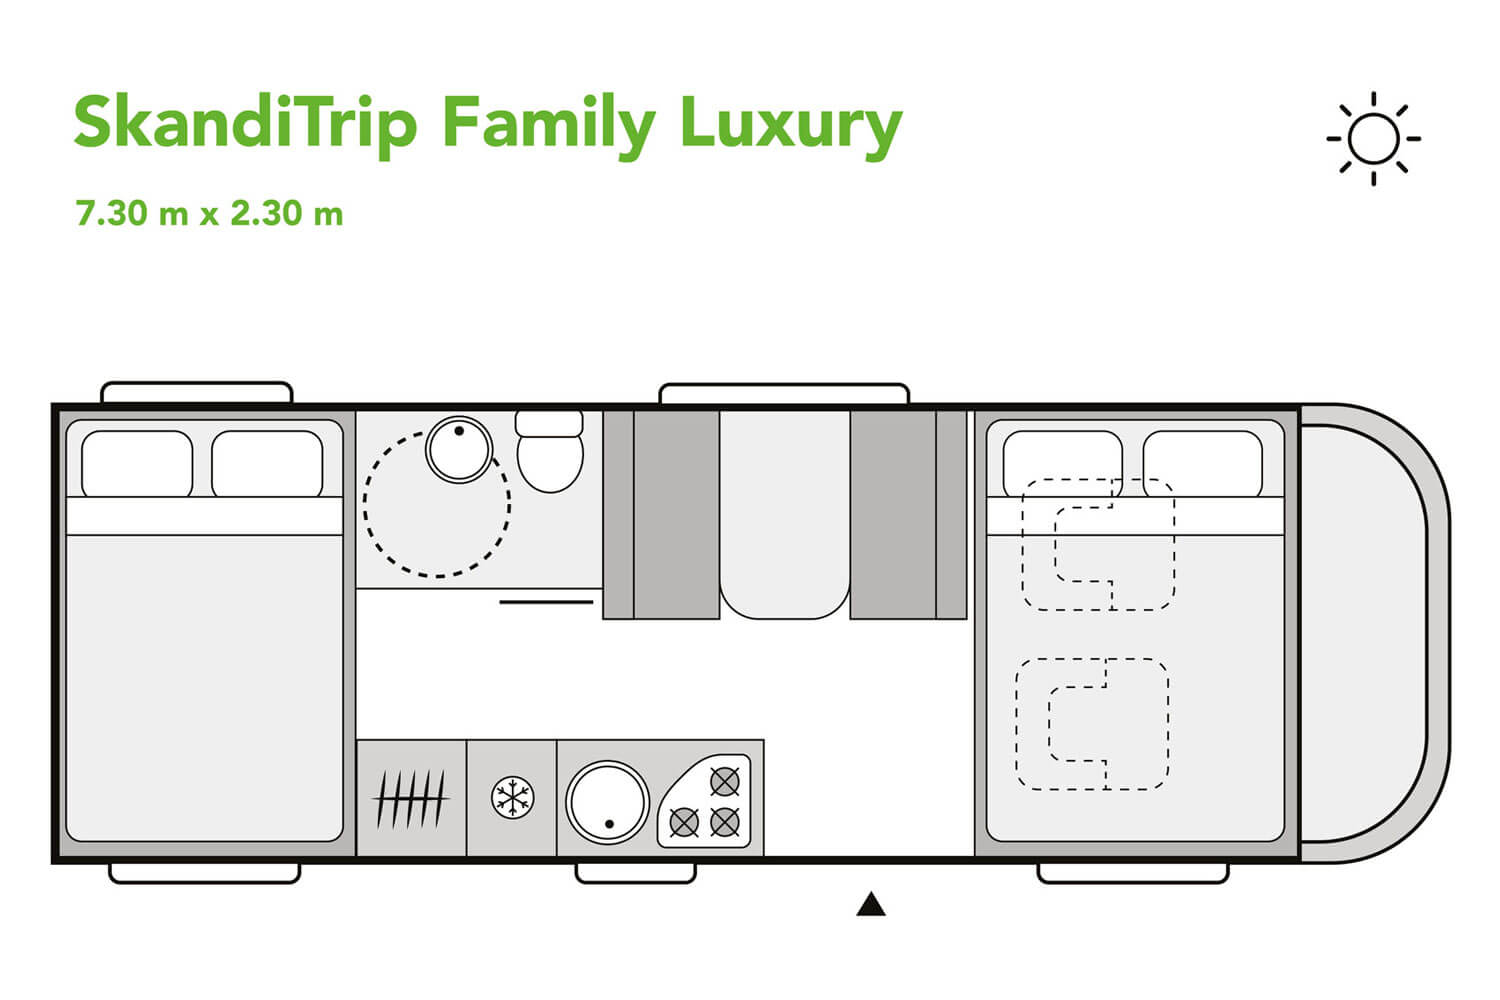 SkandiTrip family luxury motorhome daytime blueprint